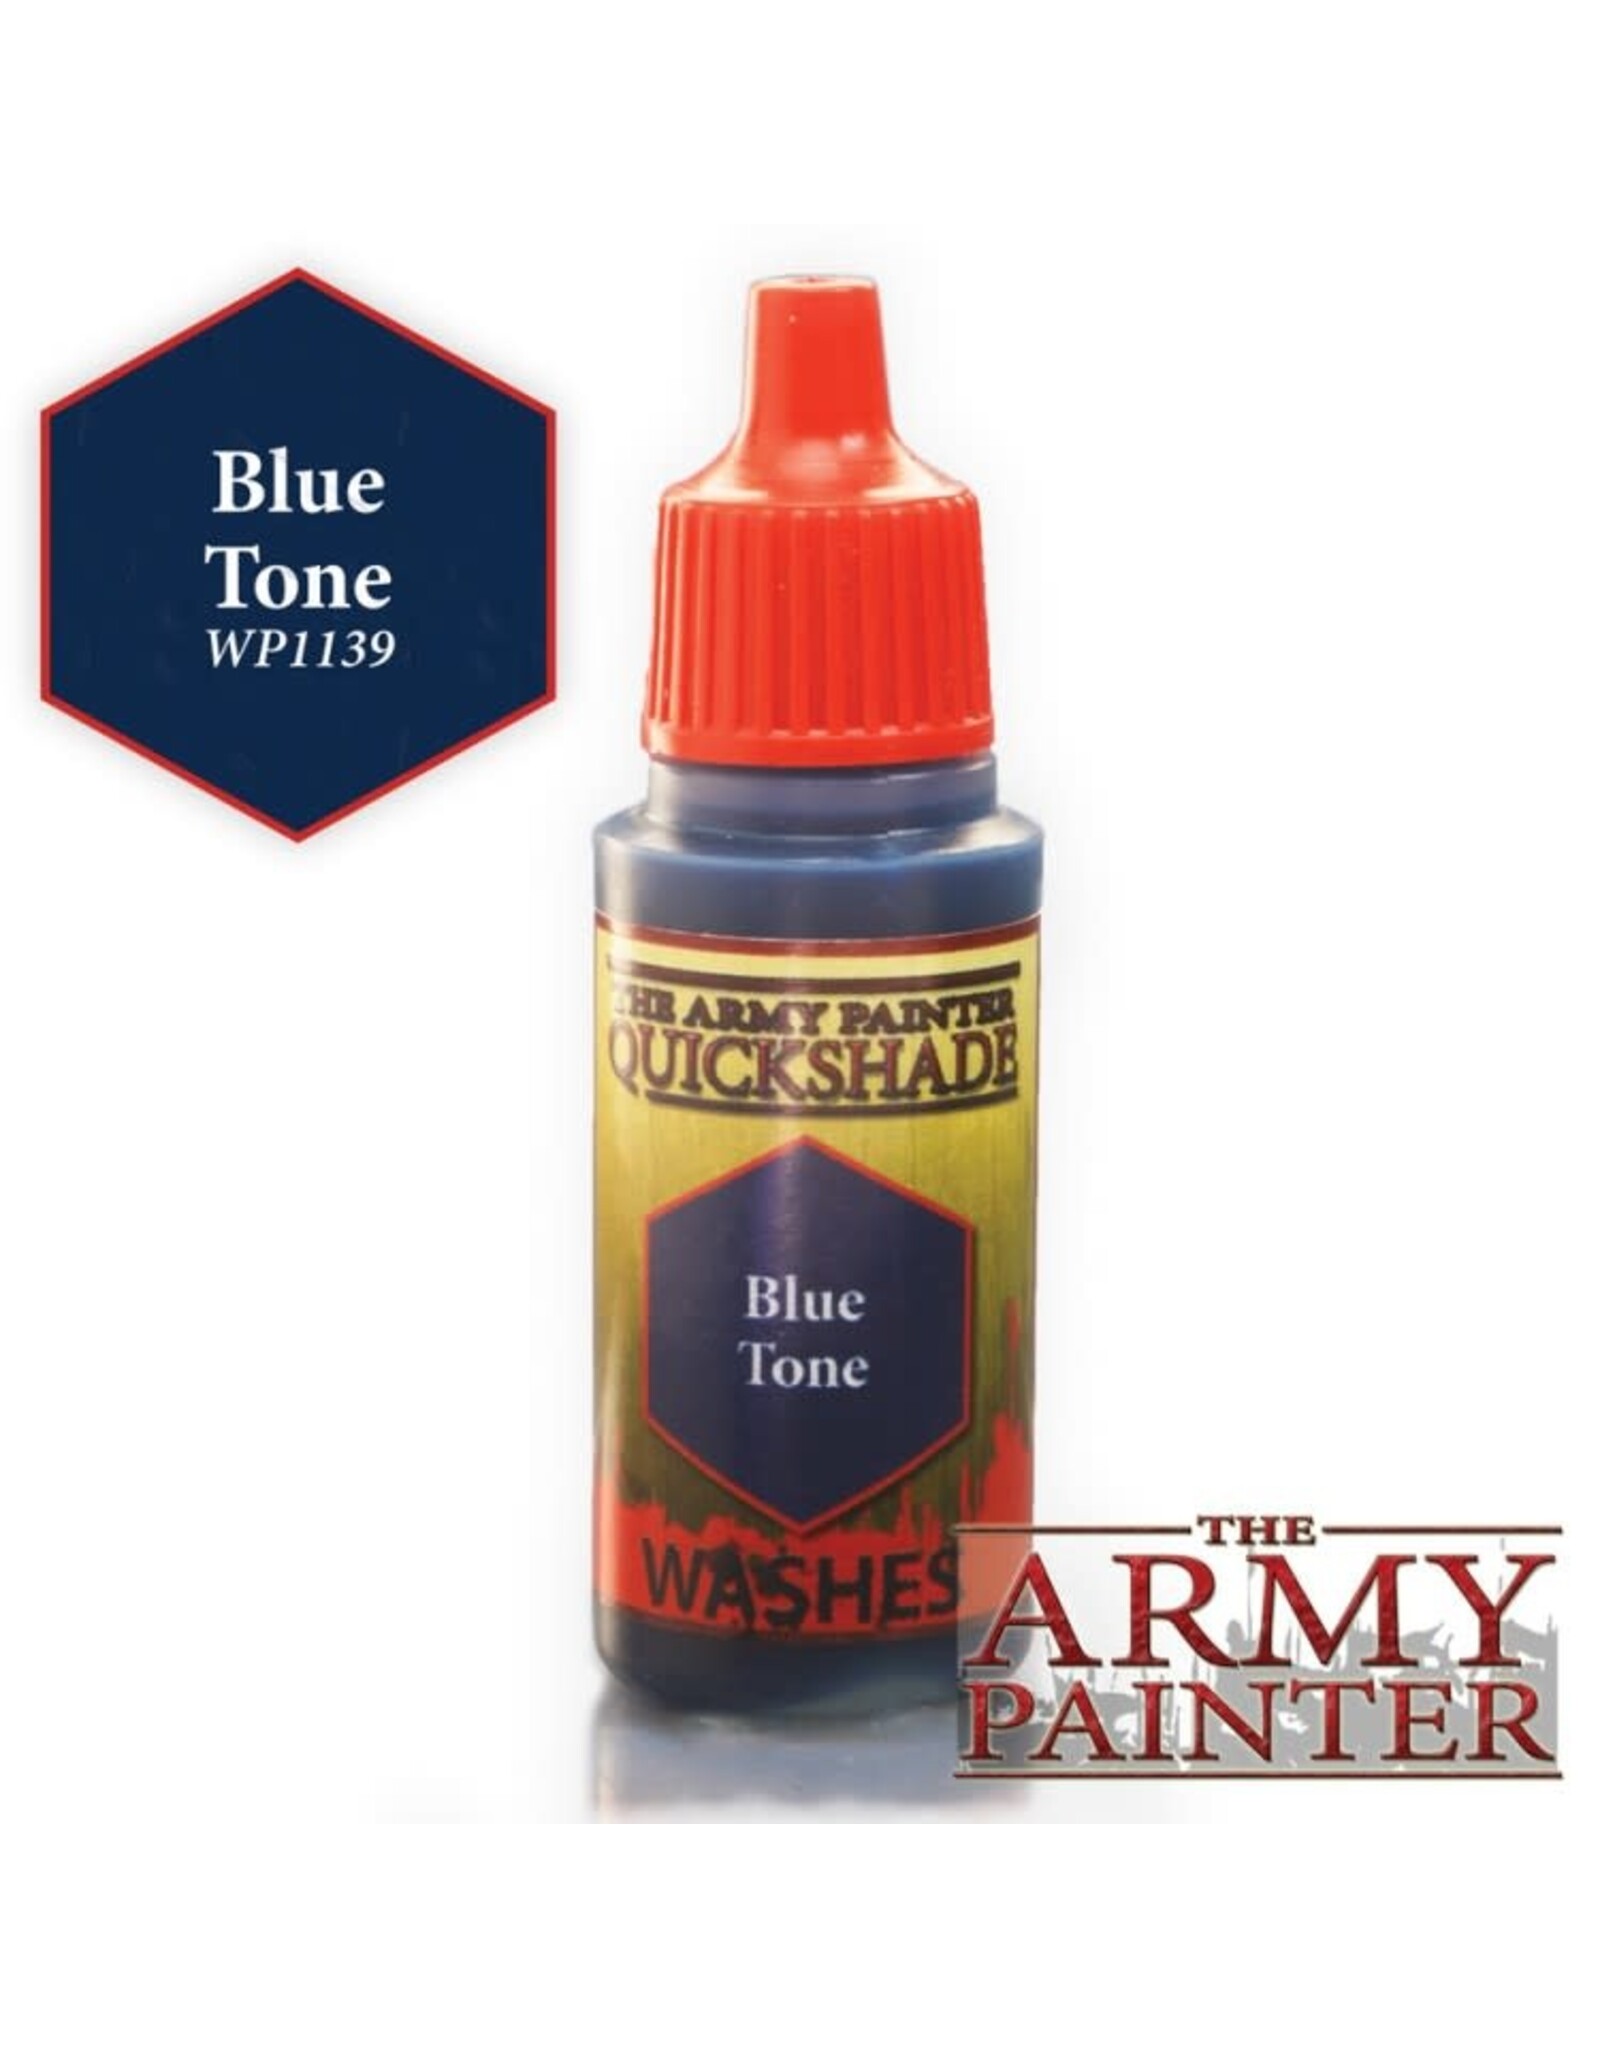 Army Painter Warpaints: Blue Tone